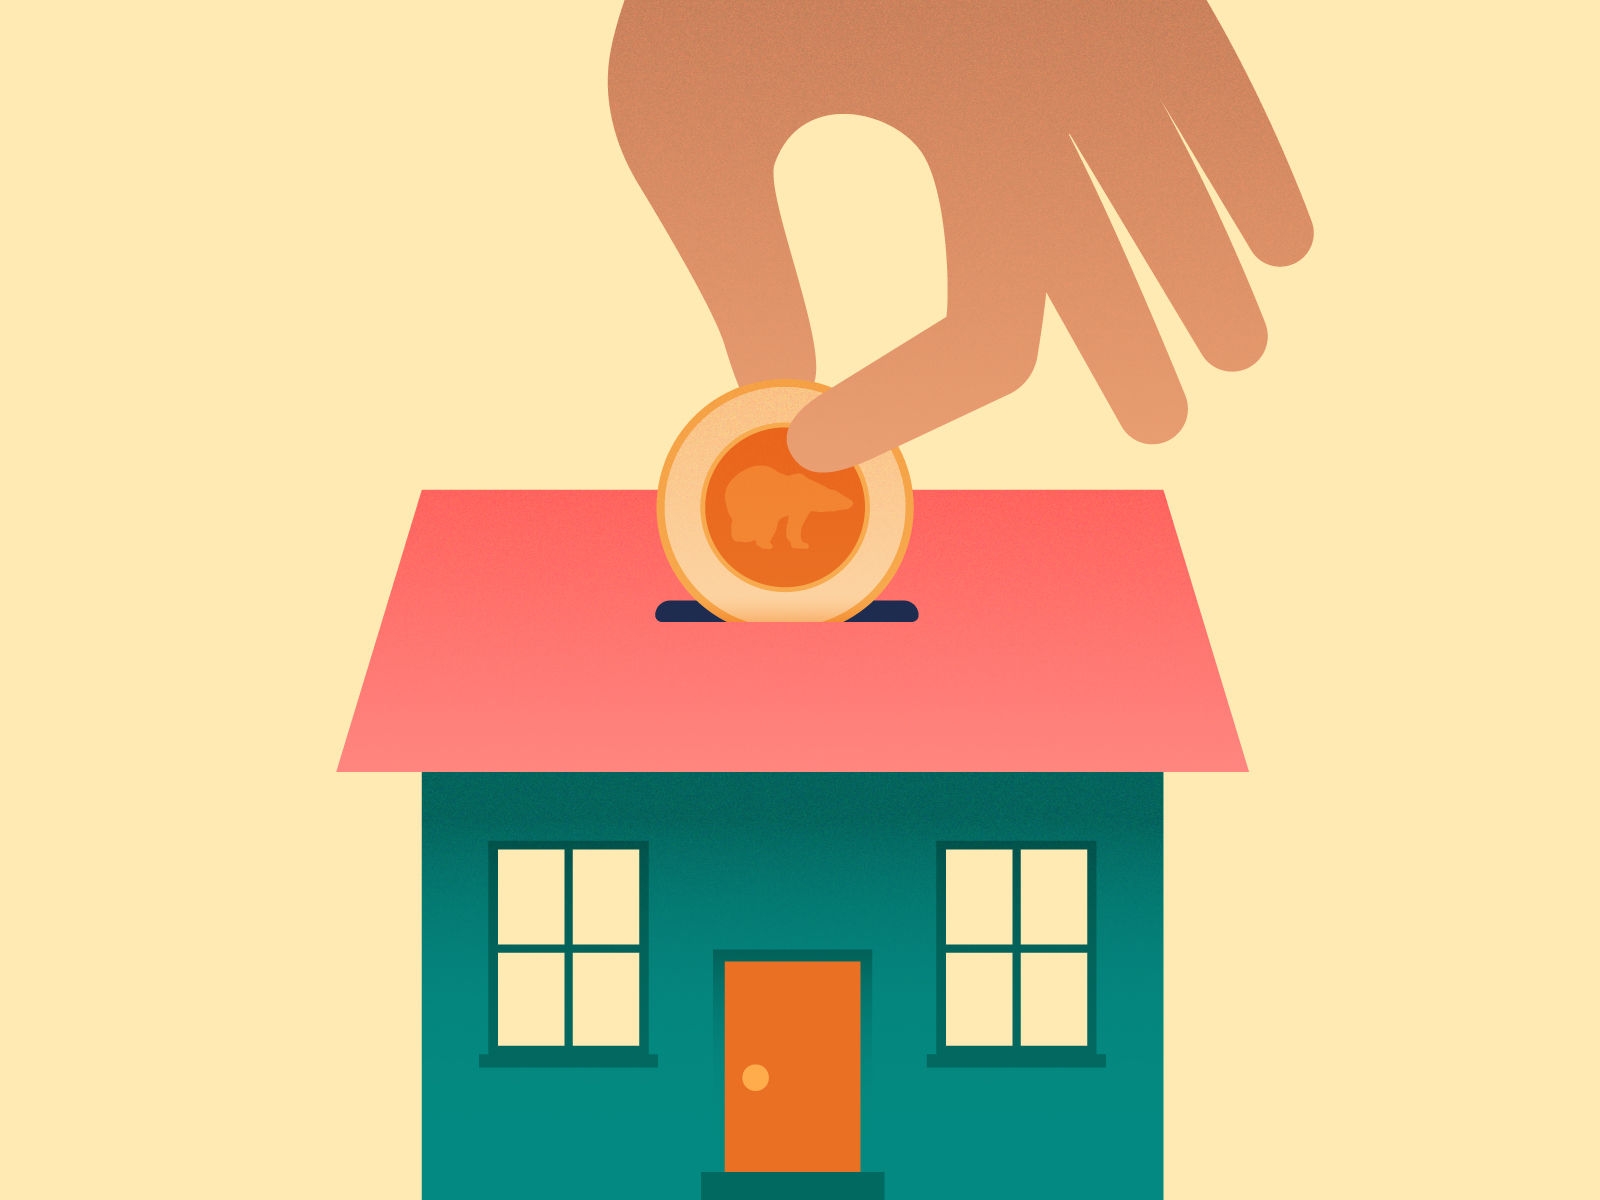 une illustration d'une main déposant une pièce de monnaie dans une fente du toit d'une maison.